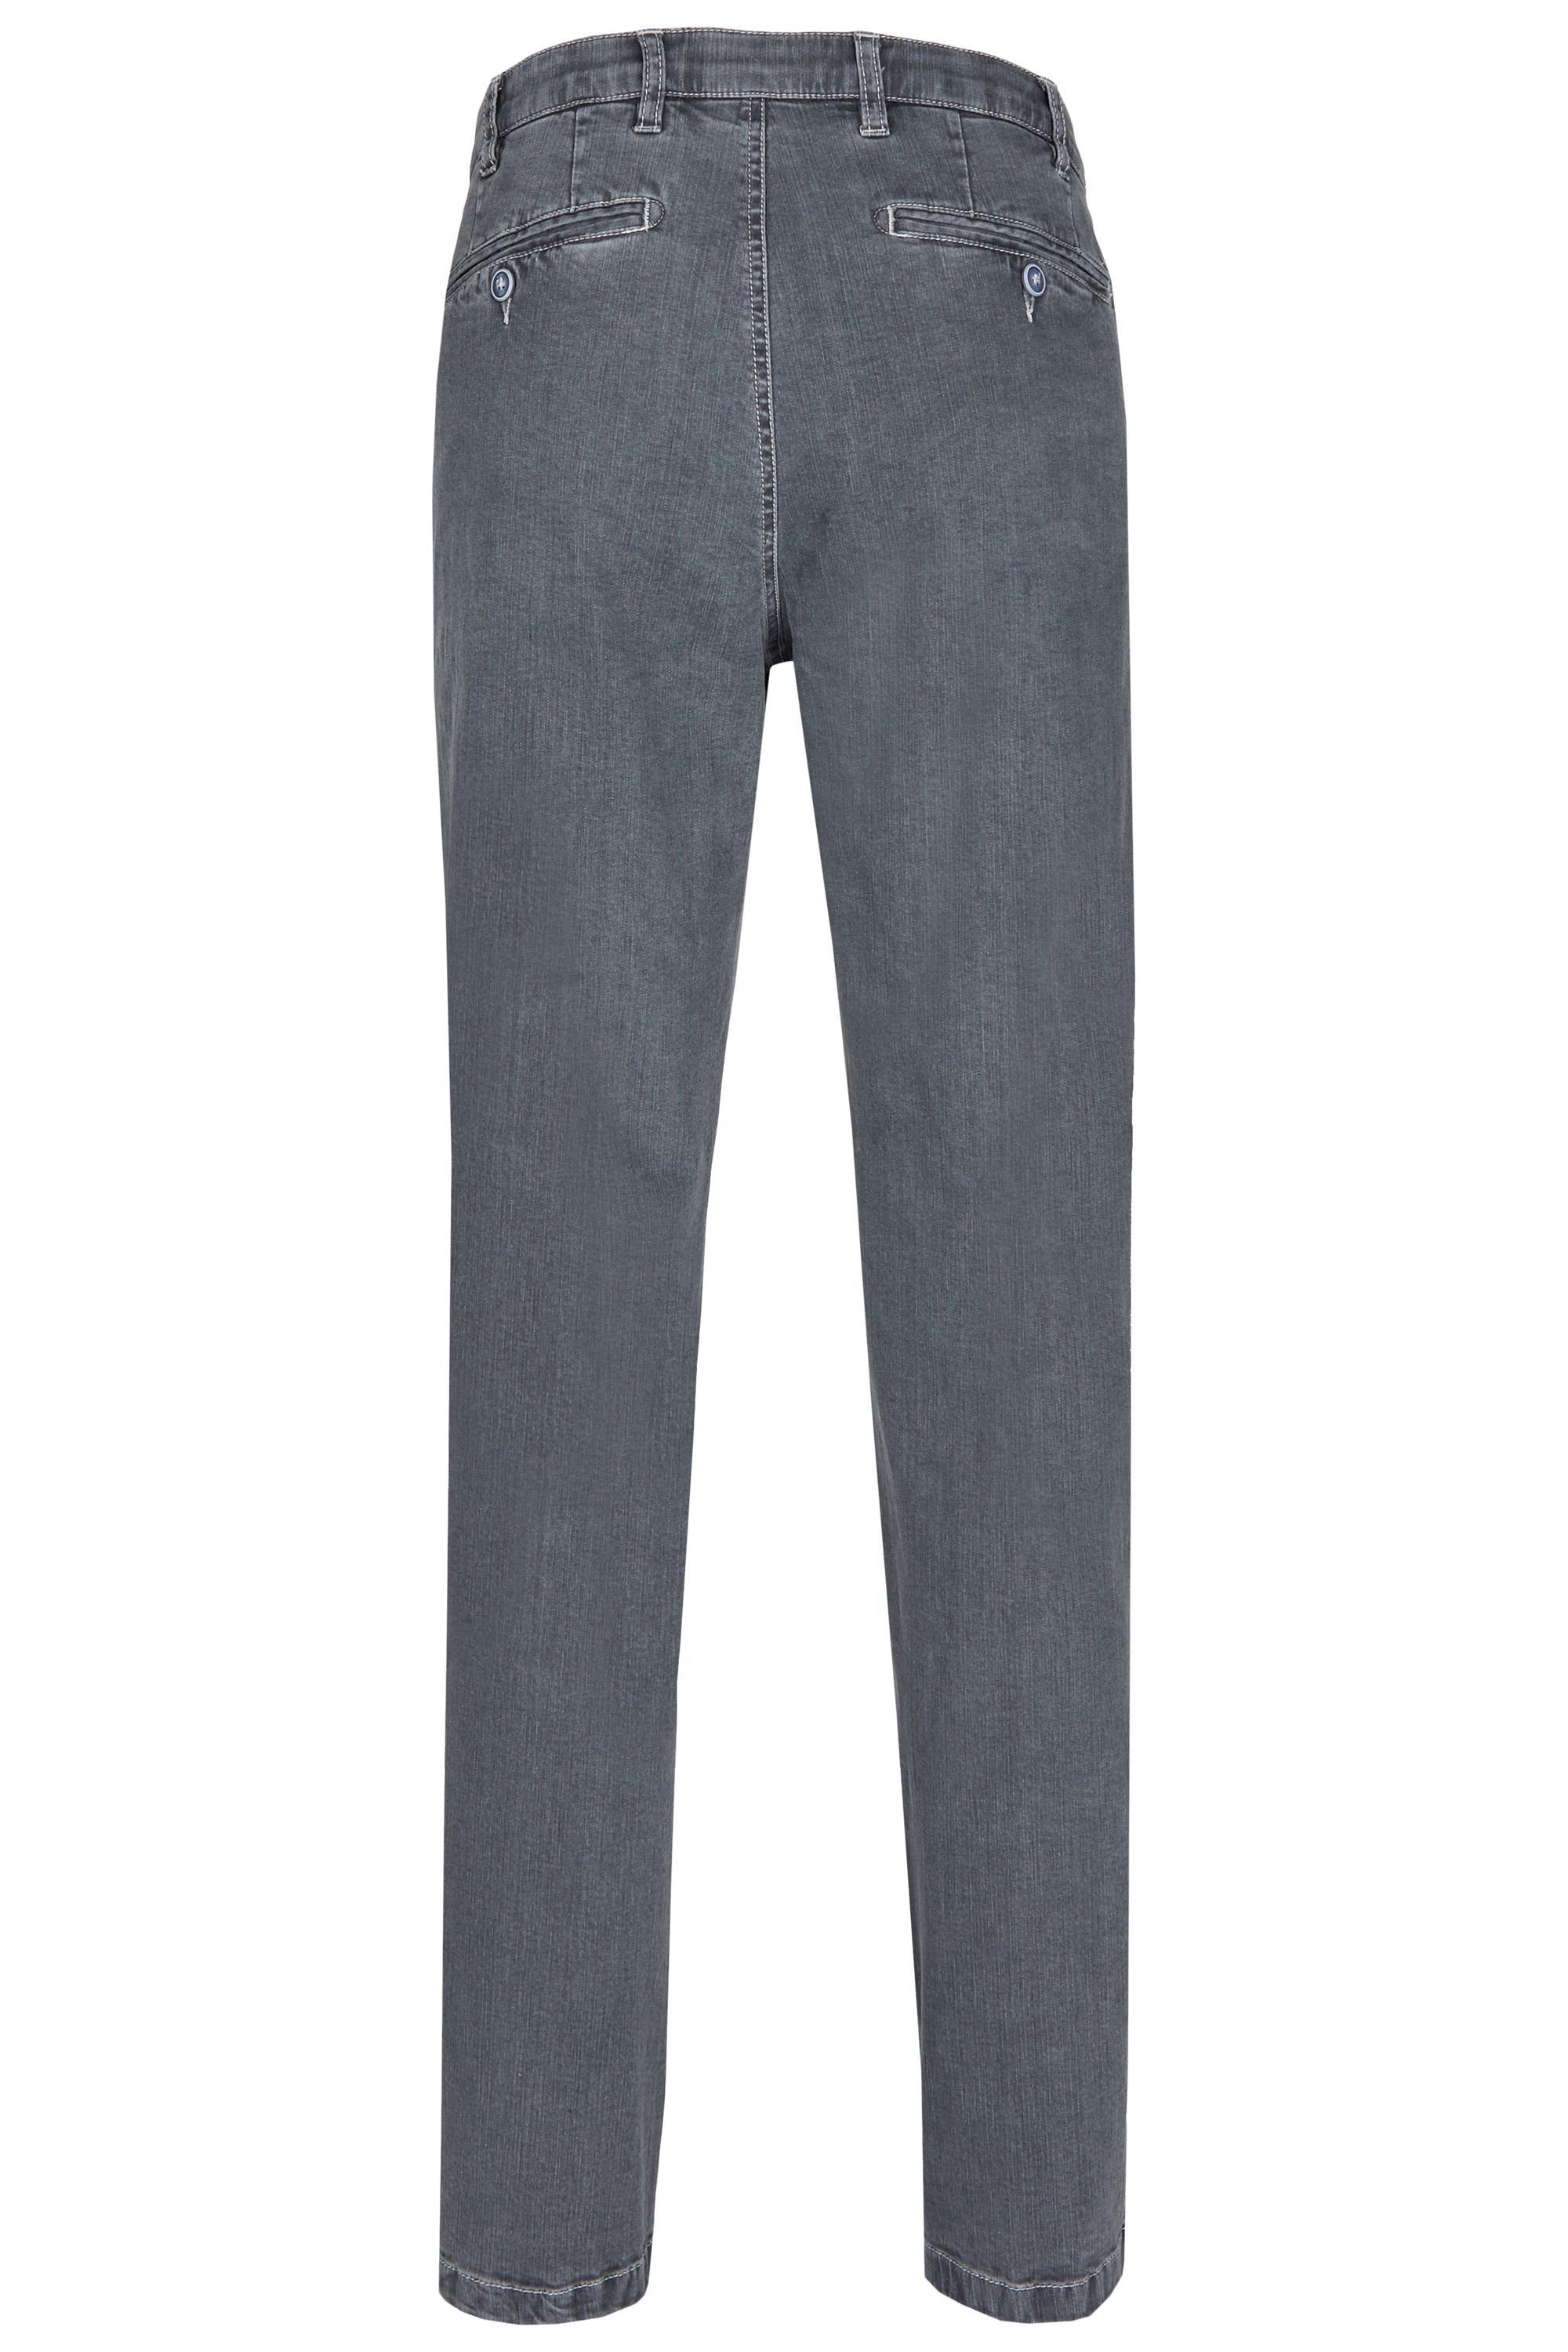 Jeans Ganzjahres Stretch Perfect Bequeme Modell Herren High aubi Baumwolle (54) 577 grey Fit aubi: Flex Hose aus Jeans